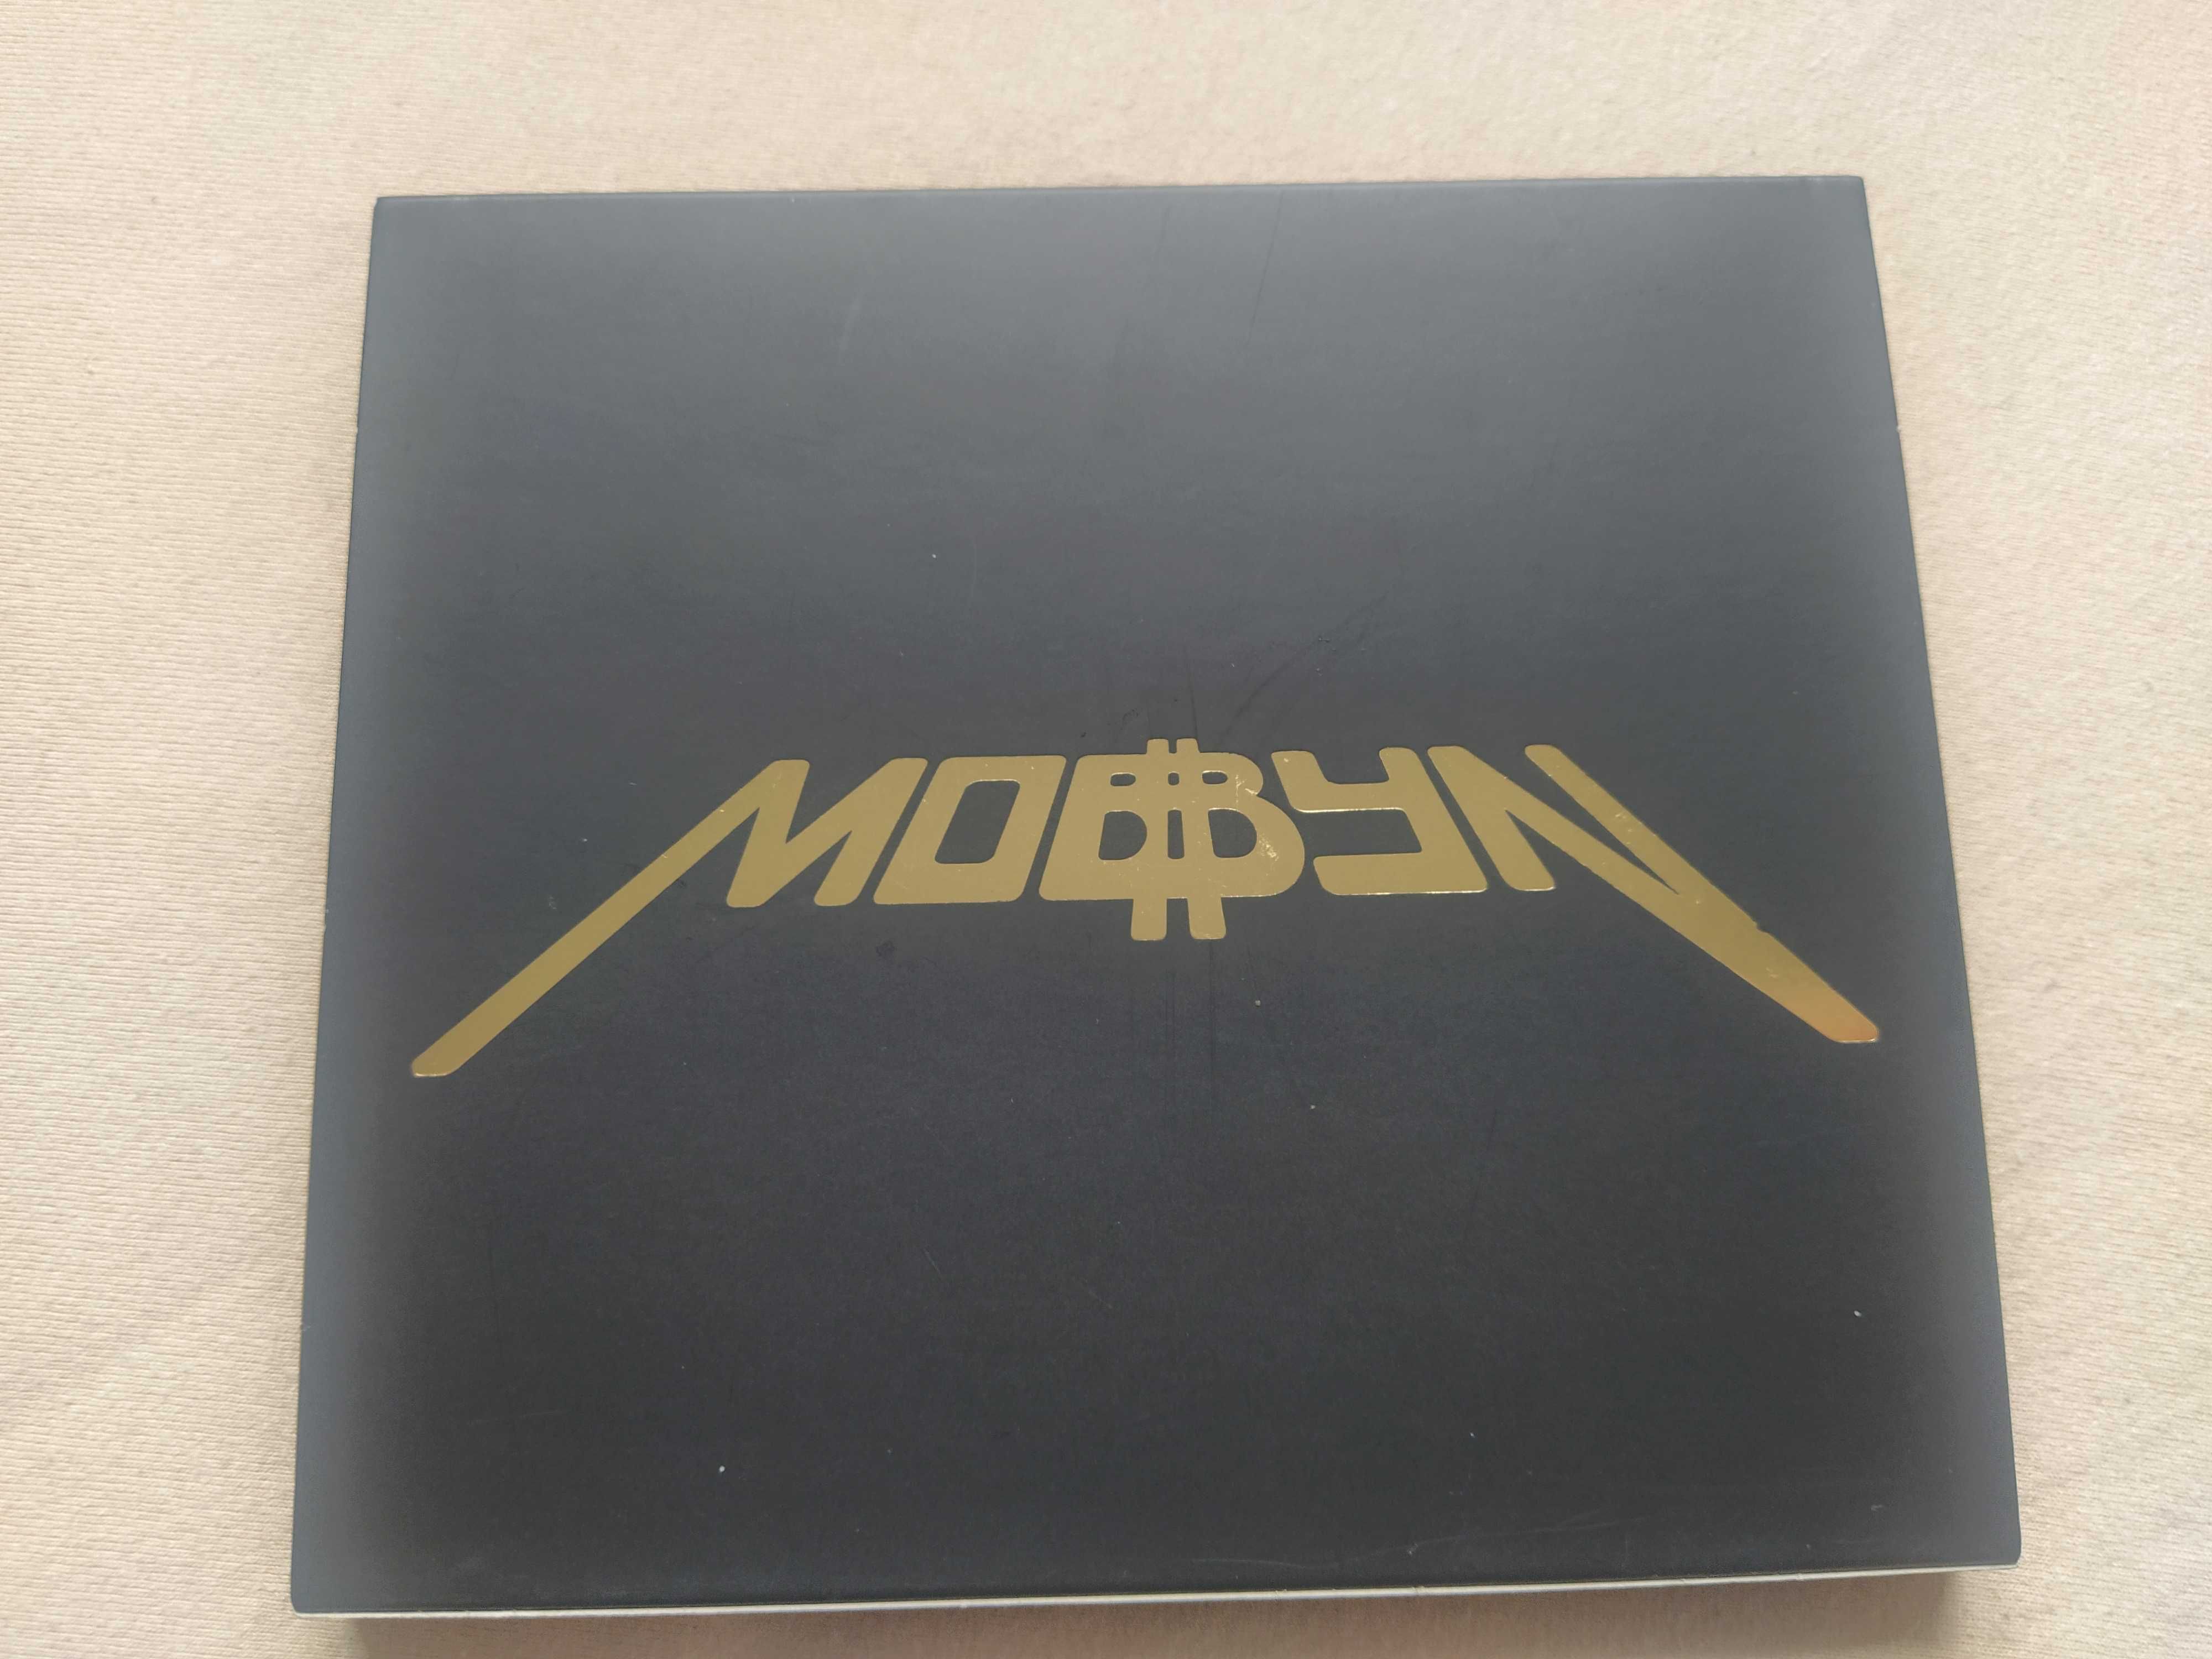 MOBBYN - Mobbyn CD